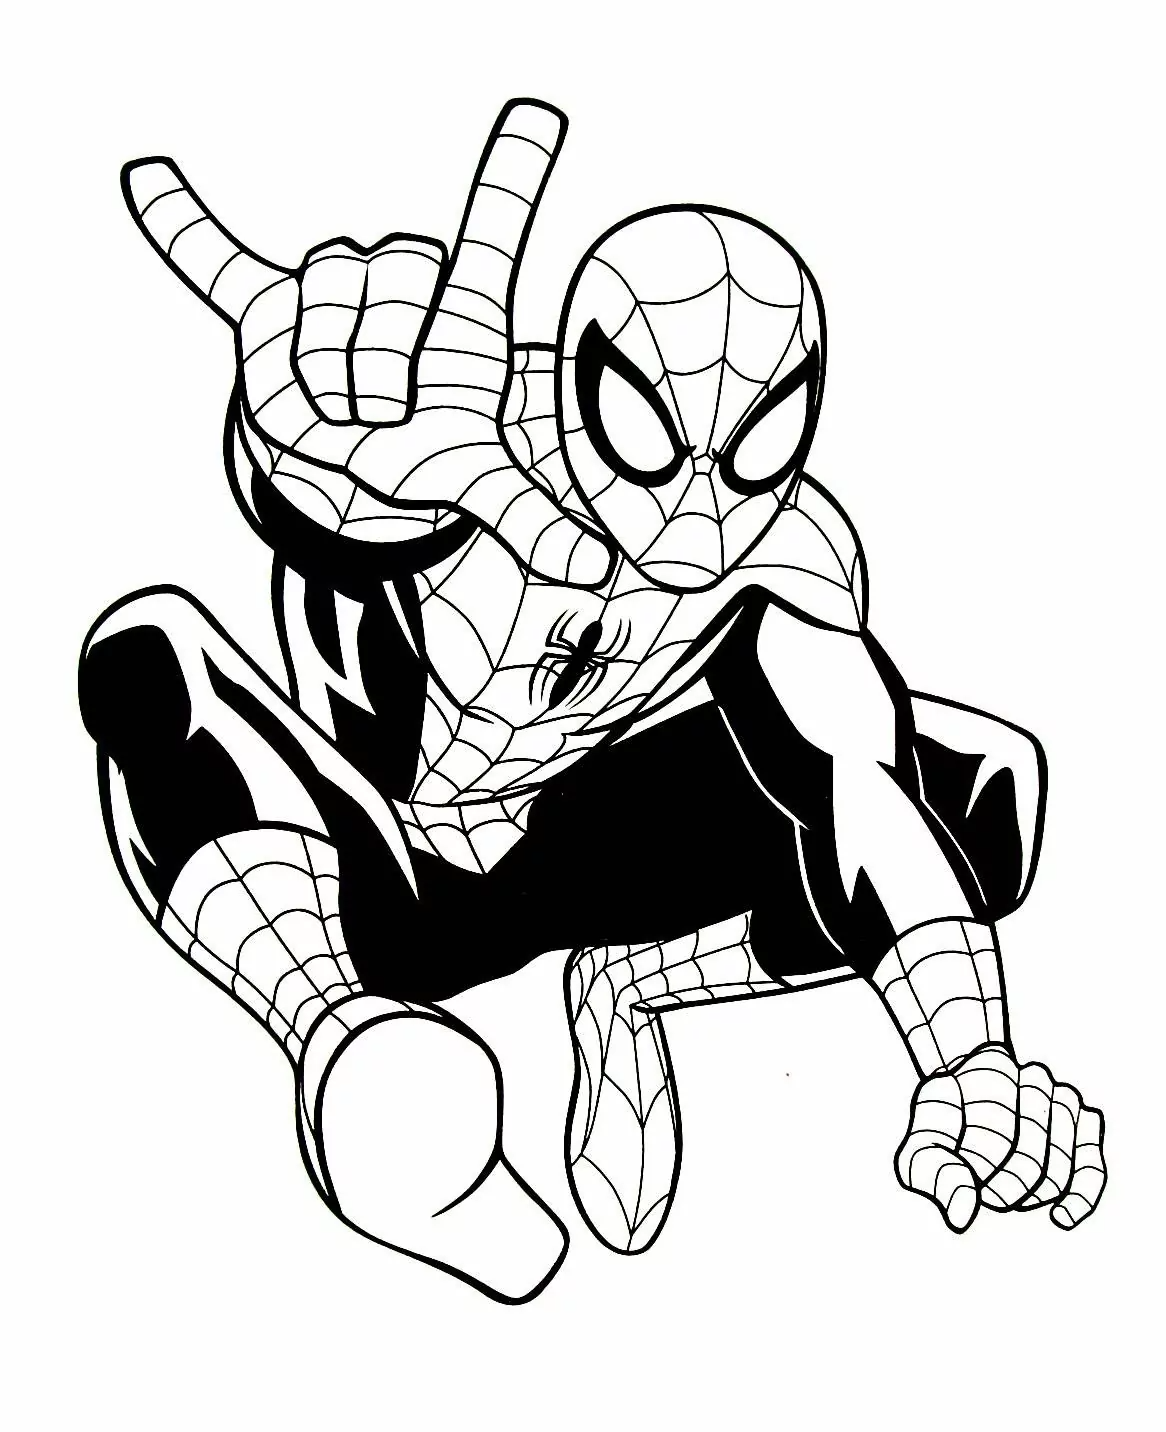 Homem Aranha preto ❤ desenhos para desenhar 😊 how to draw. 